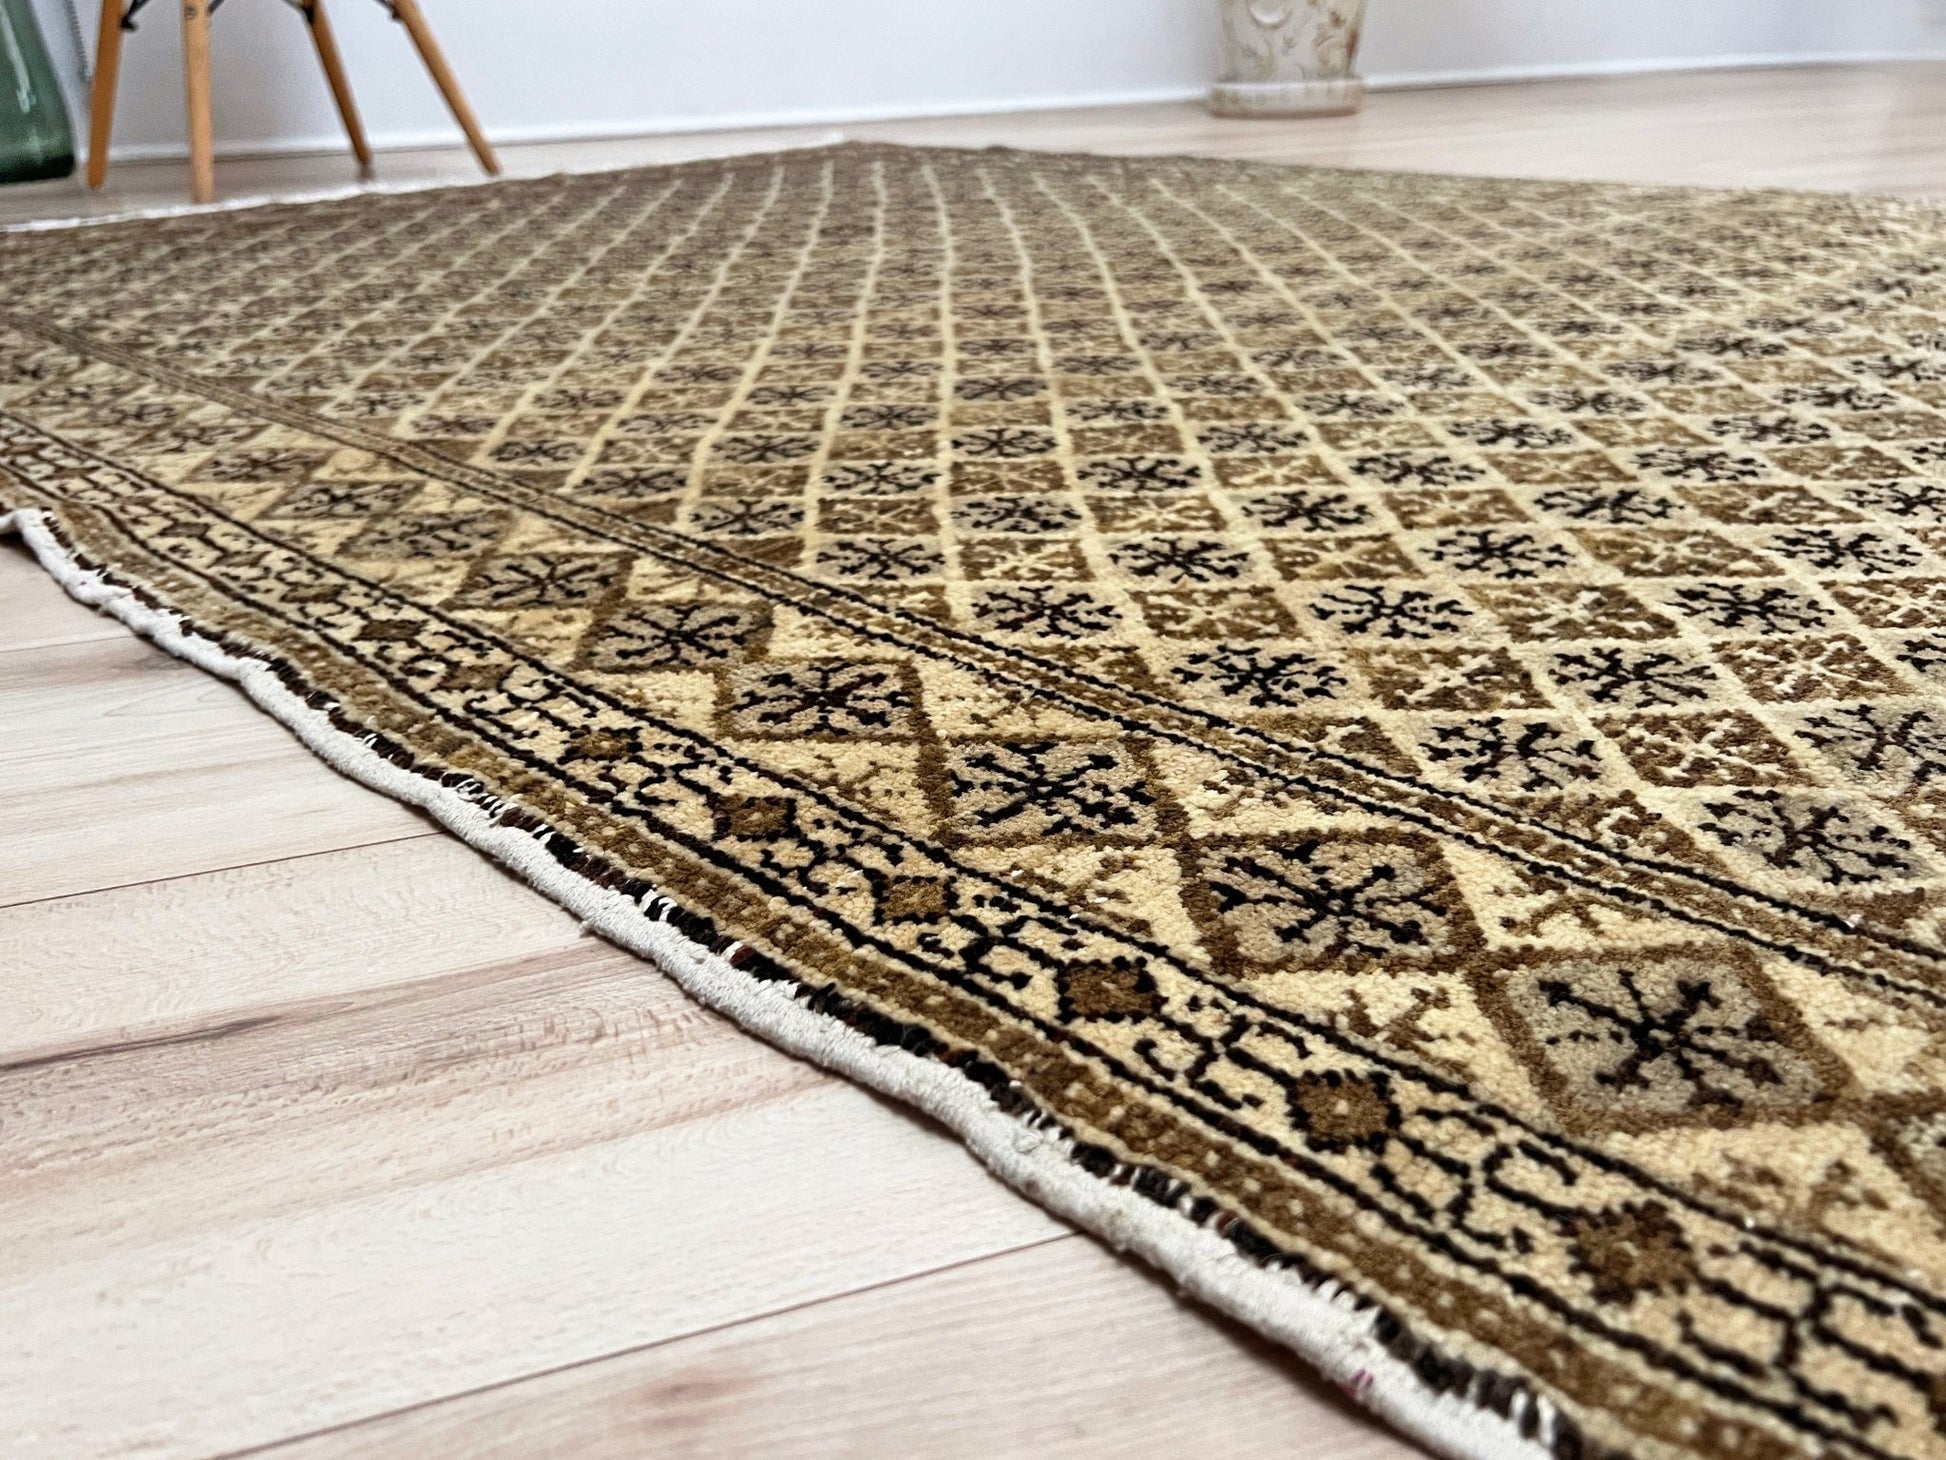 kayseri handmade wool small turkish rug for living room, bedroom. Rug shop san francisco bay area. Oriental rug shop